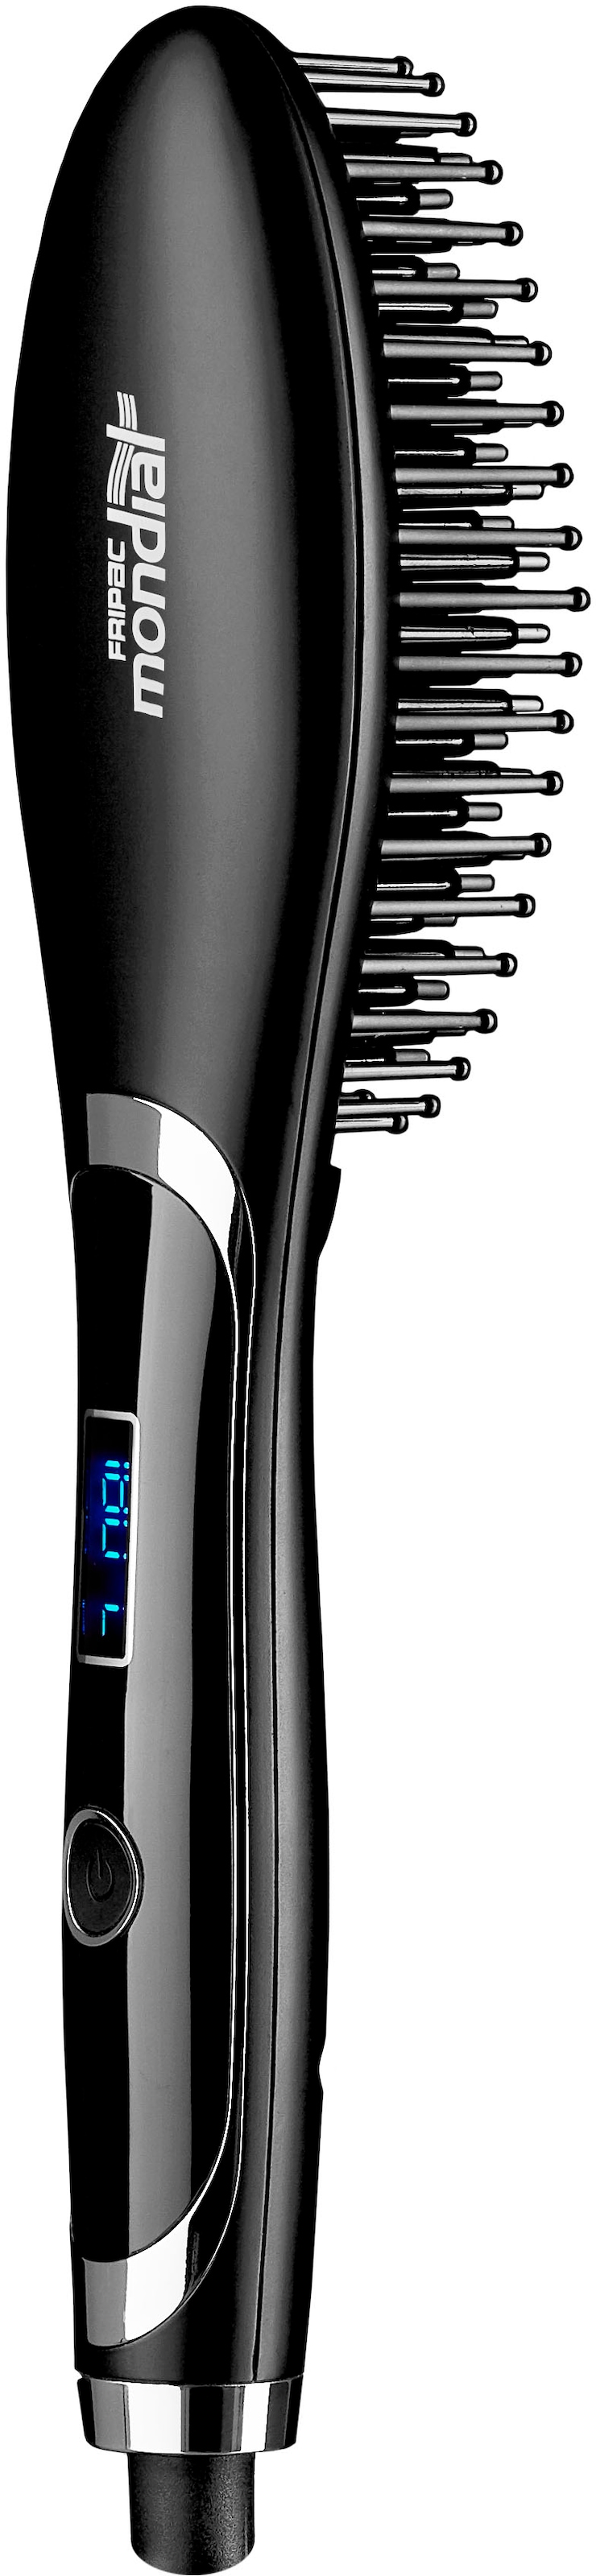 Haarglättbürste »K-4227 Airbrush«, Ionen-Technologie